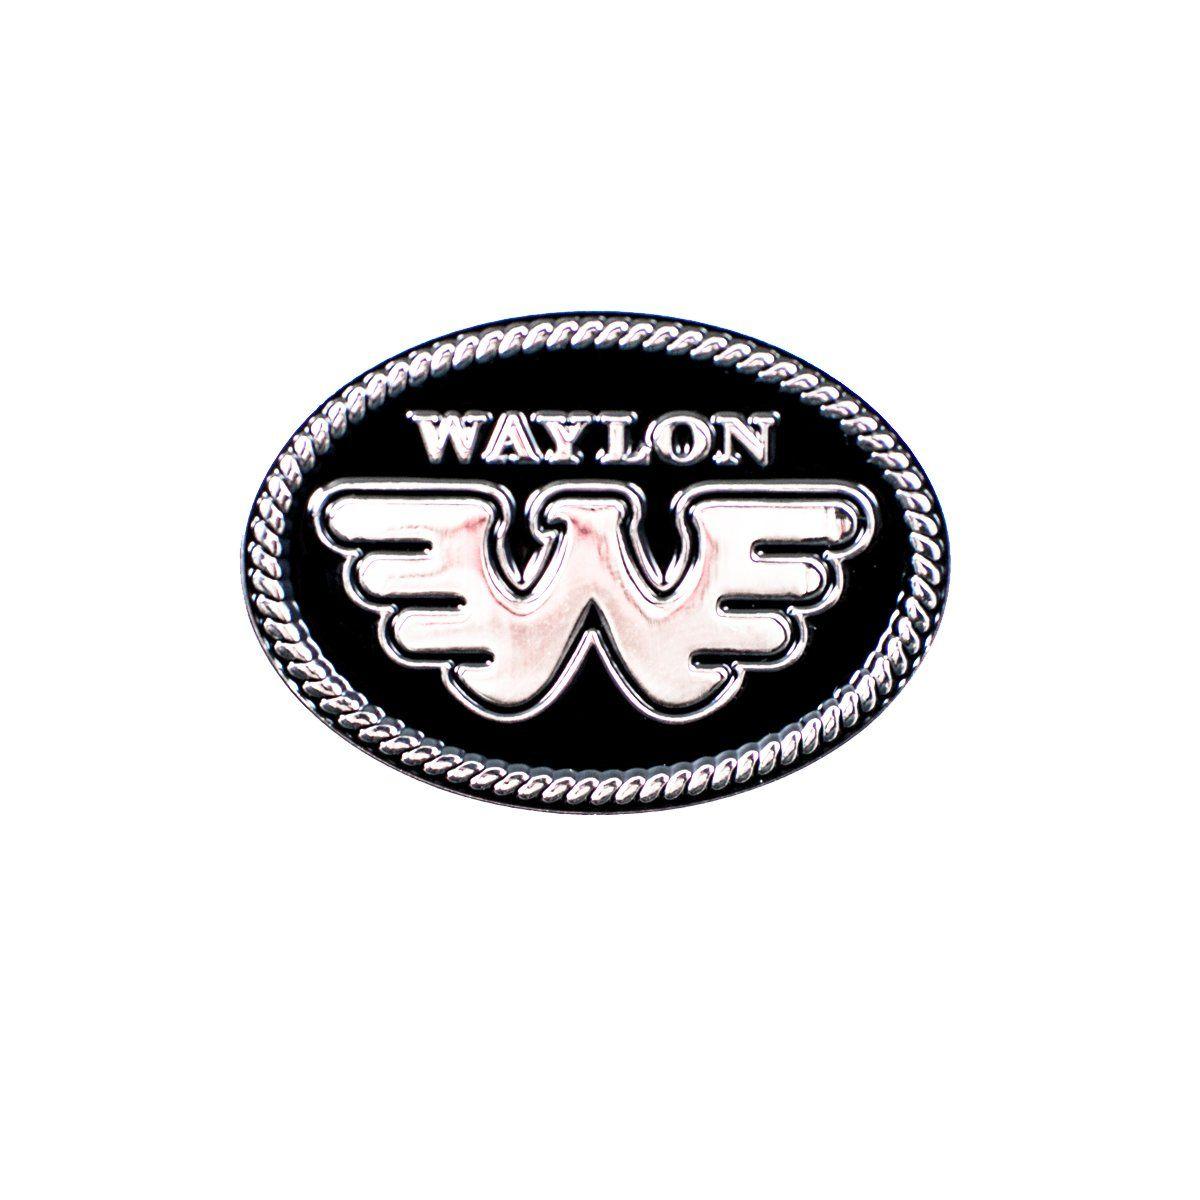 Waylon Jennings Logo - Waylon Jennings Flying W Oval Logo Trucker Hat - Waylon Jennings ...